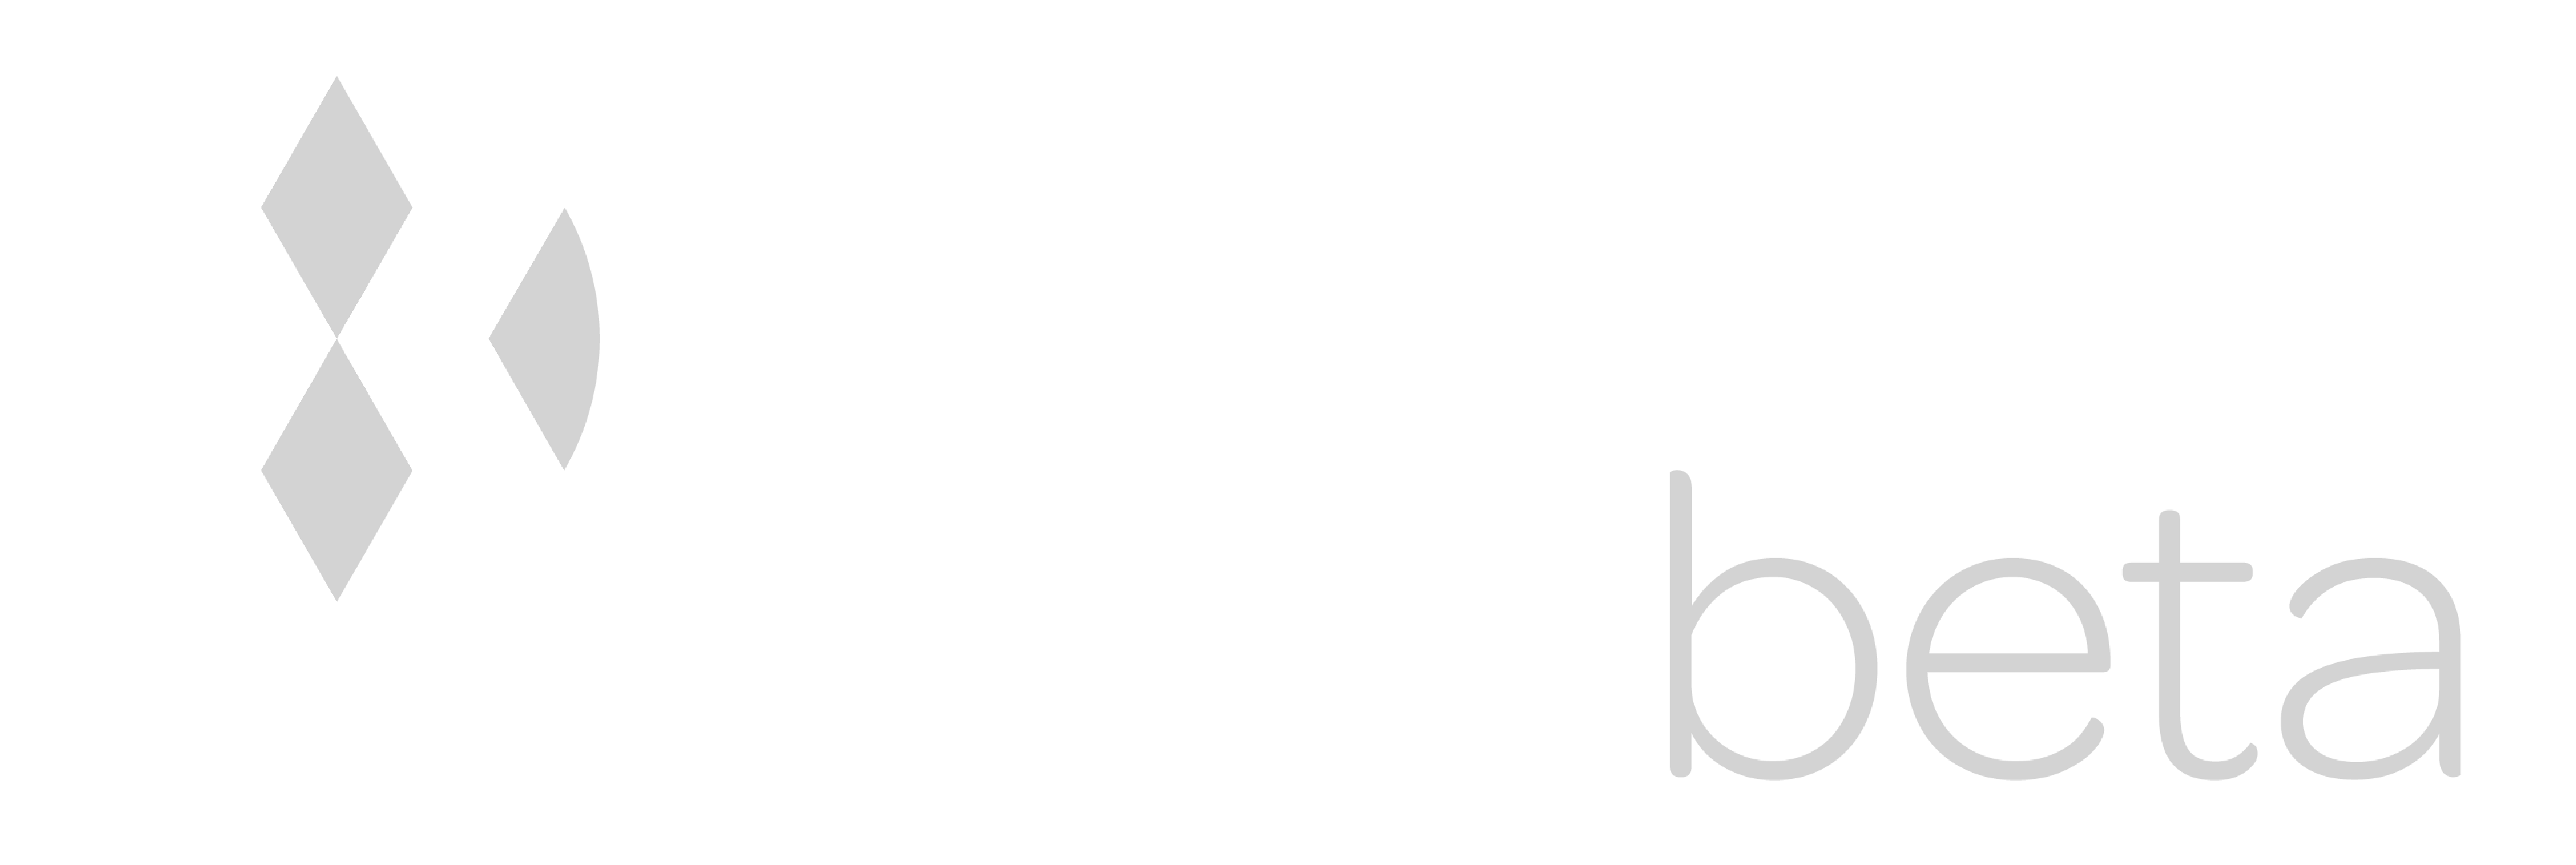 synbiobeta-logo